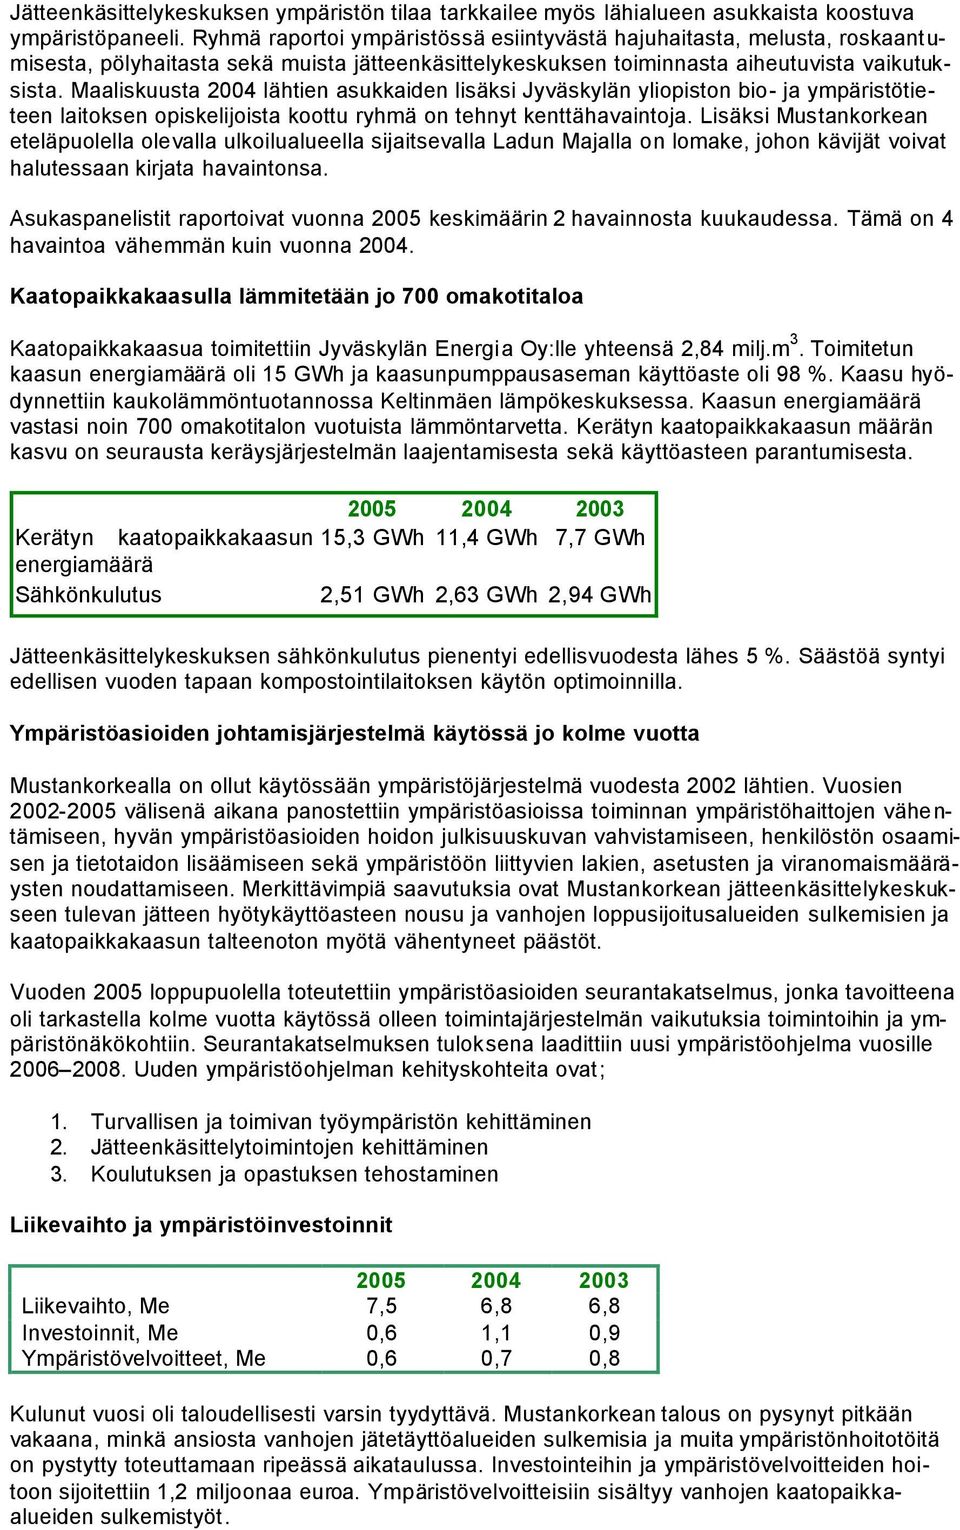 Maaliskuusta 2004 lähtien asukkaiden lisäksi Jyväskylän yliopiston bio- ja ympäristötieteen laitoksen opiskelijoista koottu ryhmä on tehnyt kenttähavaintoja.